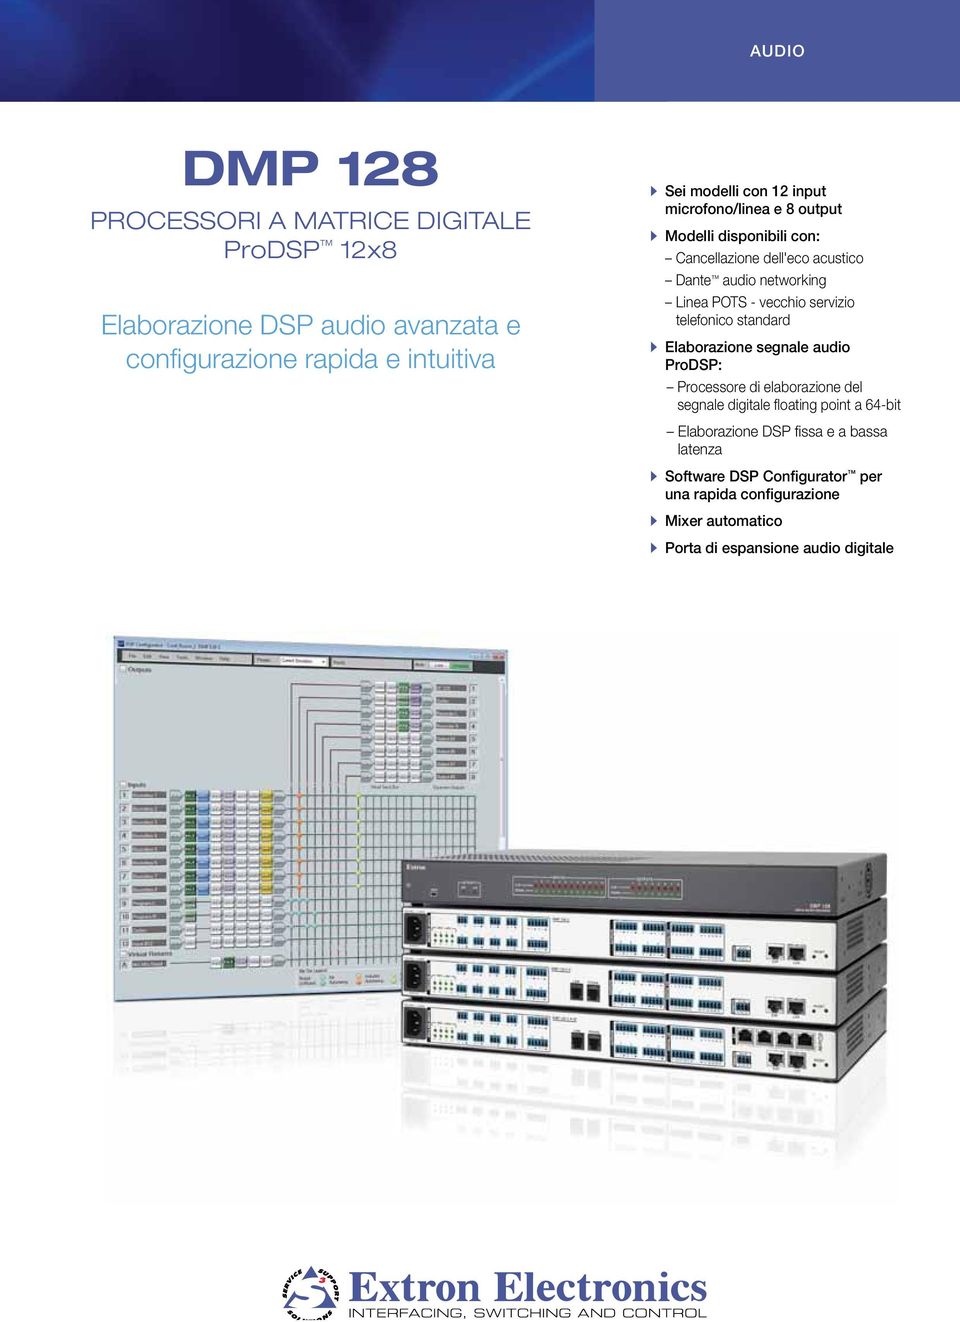 servizio telefonico standard AAElaborazione segnale audio ProDSP: Processore di elaborazione del segnale digitale floating point a -bit